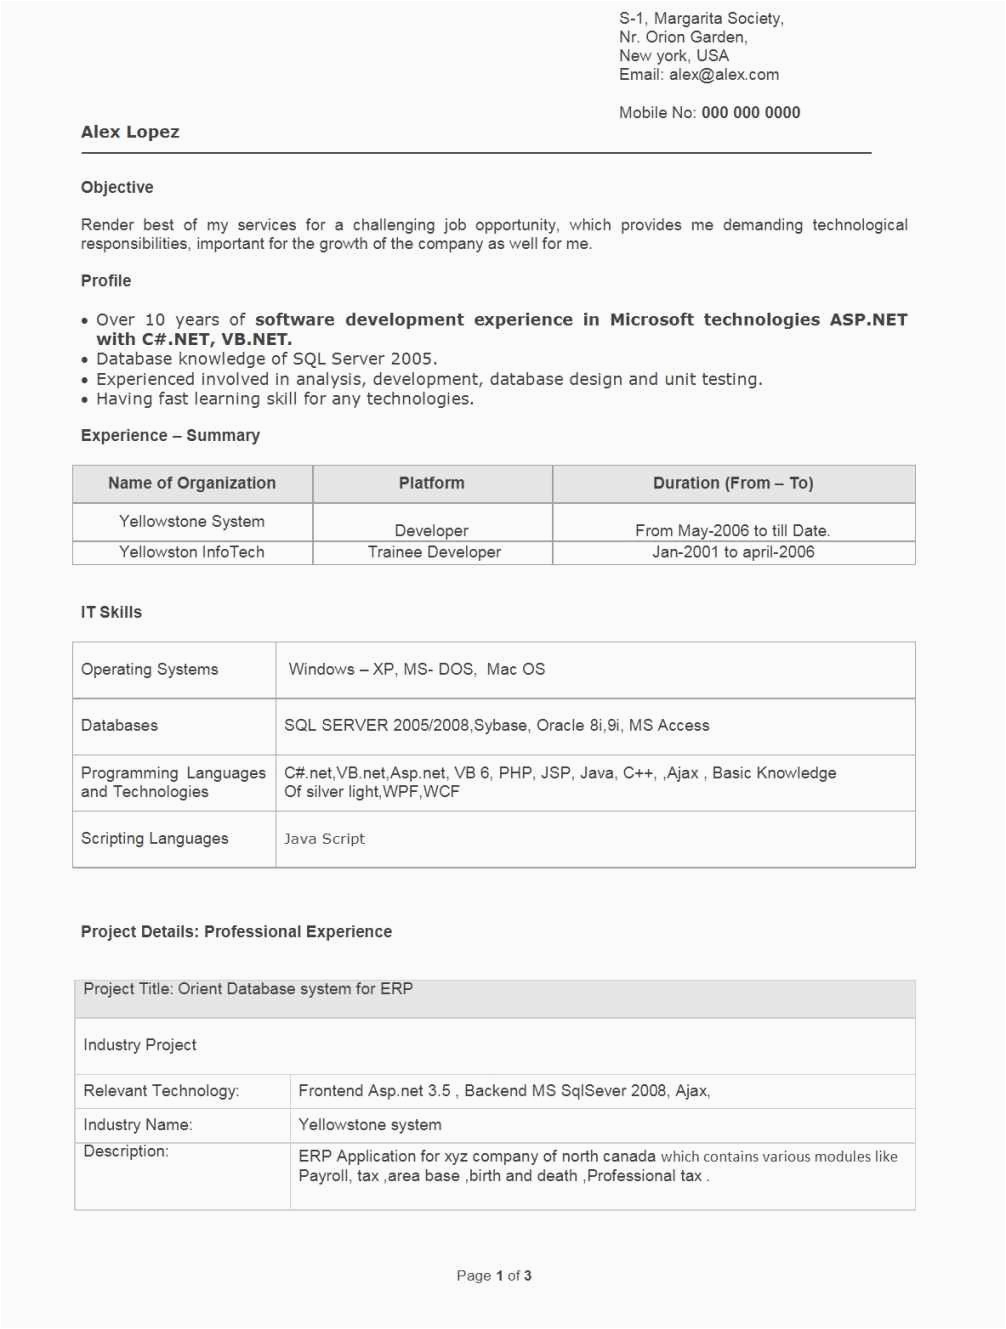 Sample Resume for Mechanical Engineer Fresh Graduate Pdf Resume Sample for Fresh Graduate Download